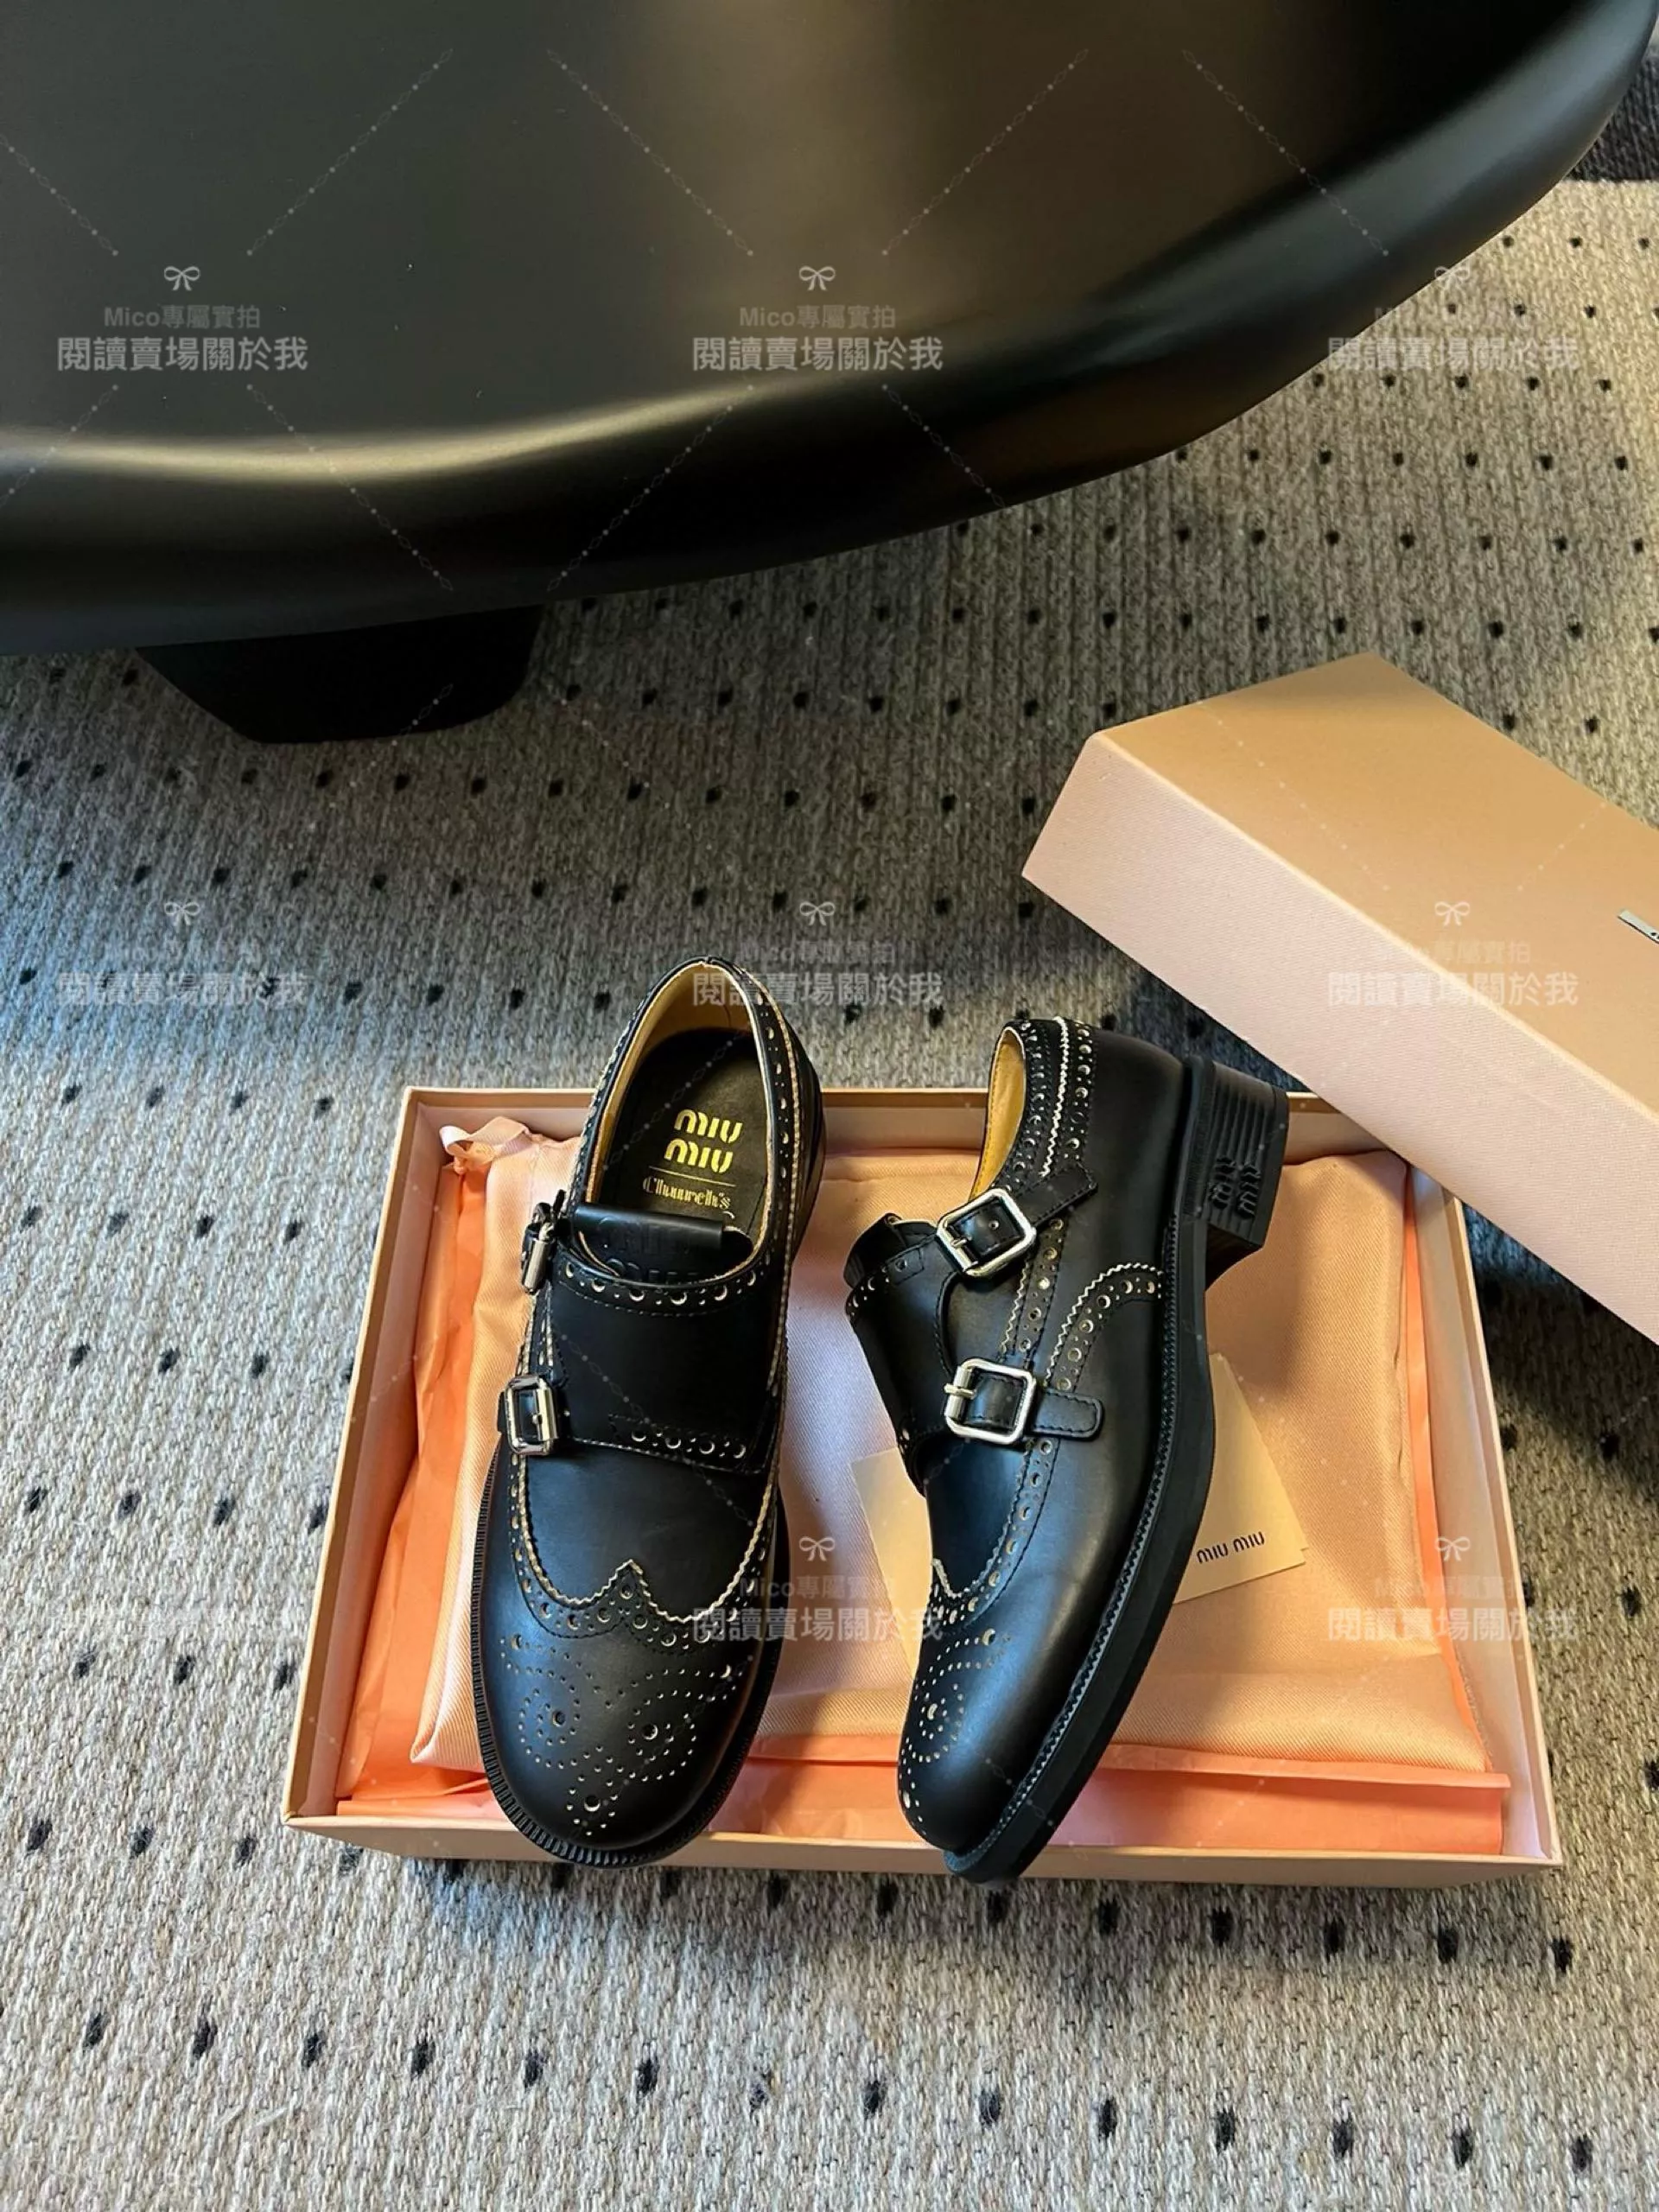 Miumiu x Church‘s 聯名款 擦色黑 英倫風雕花德比鞋 皮鞋 紳士鞋 35-40